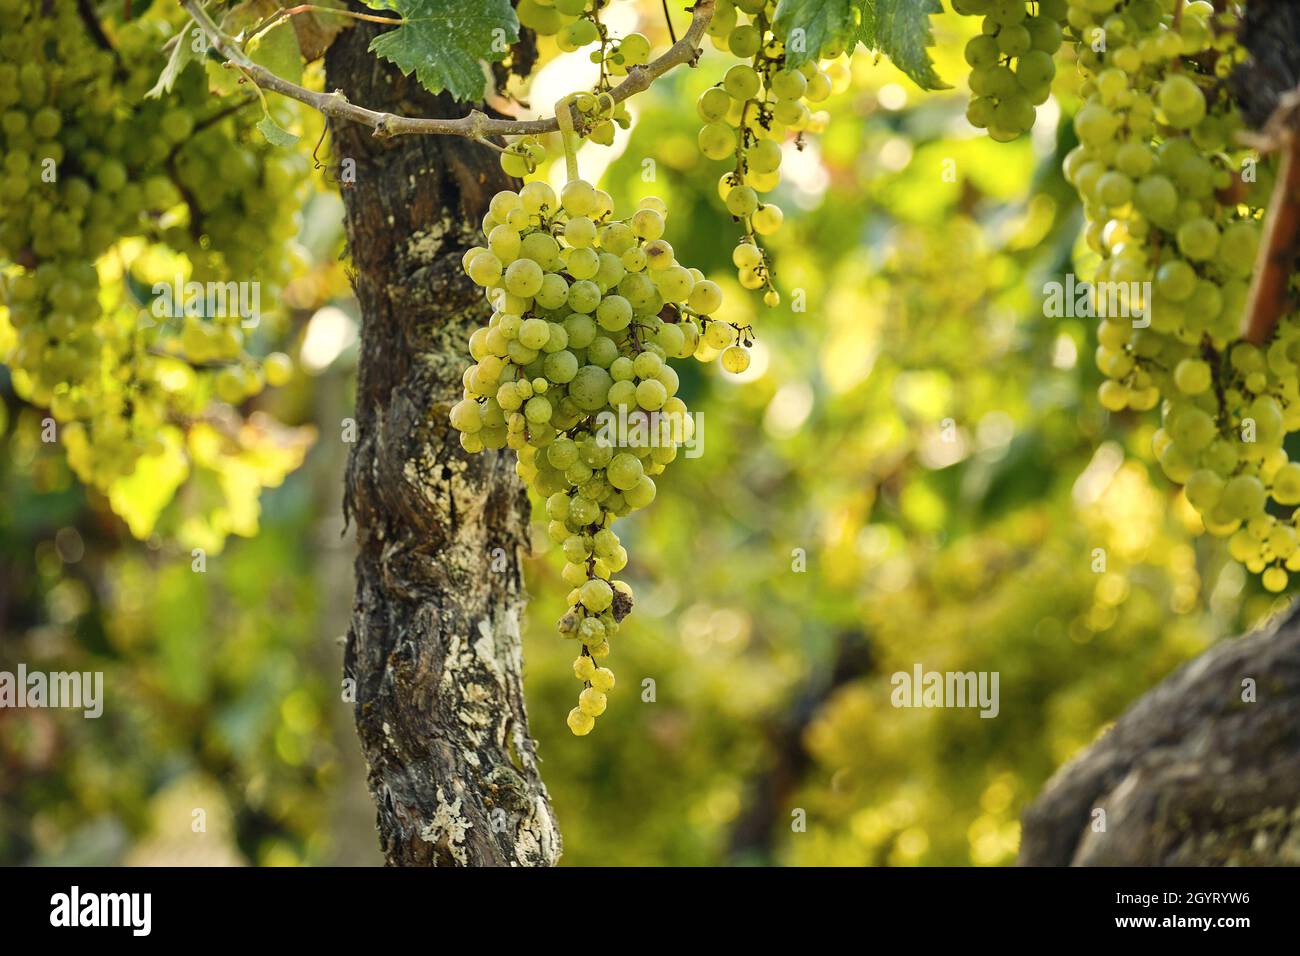 Vitis vinifera grape vine fruits Stock Photo